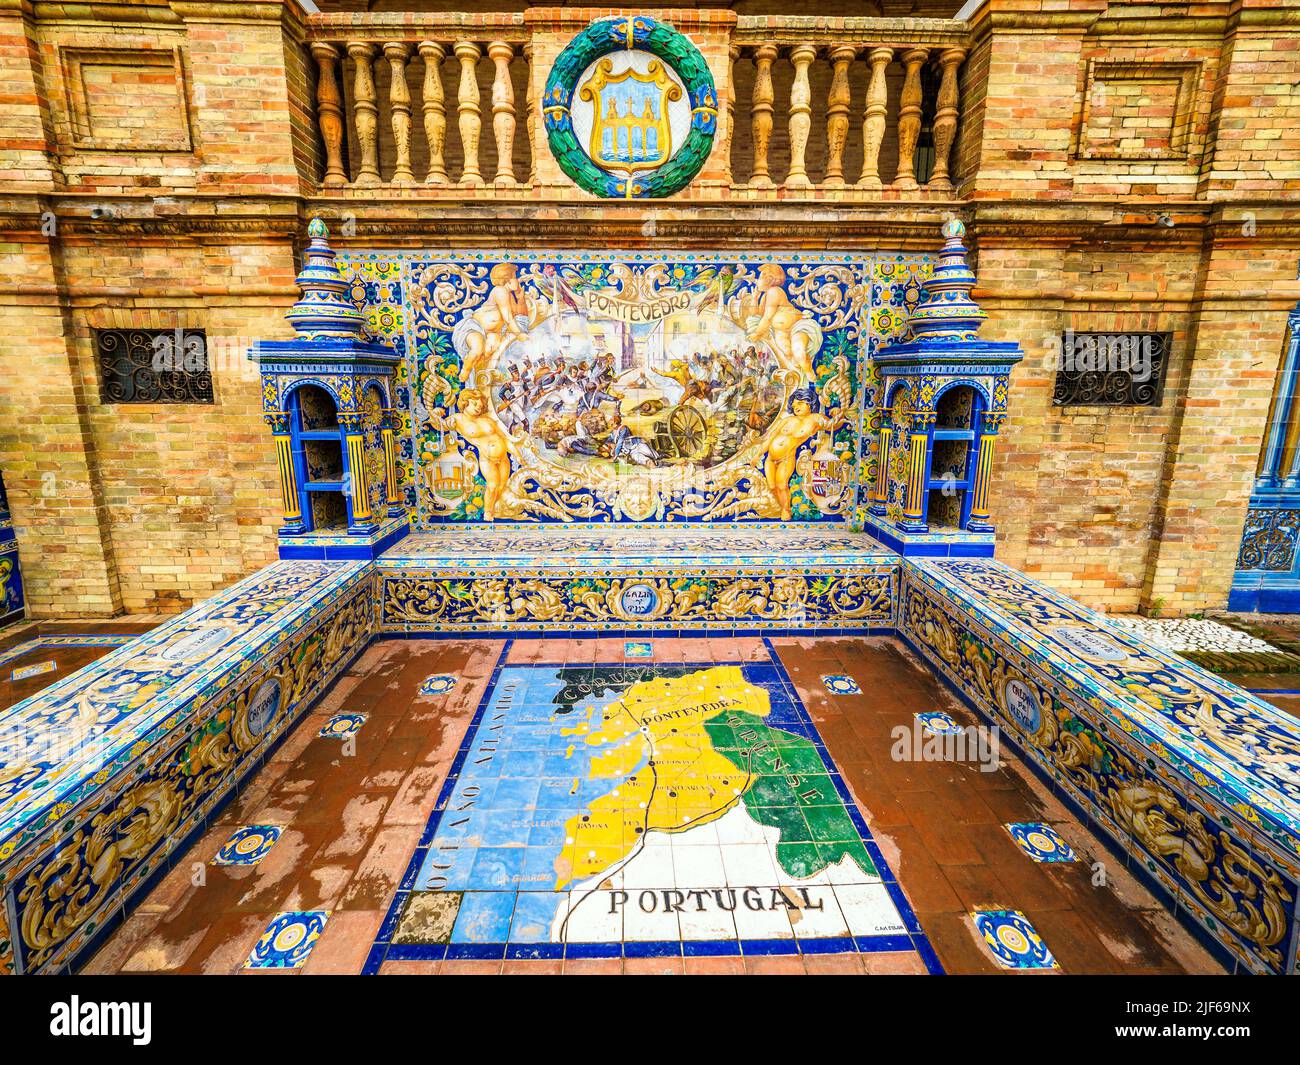 Detalle de la provincia española de pontevedra en azulejos a lo largo de las murallas del edificio Plaza de España - Sevilla, España Foto de stock